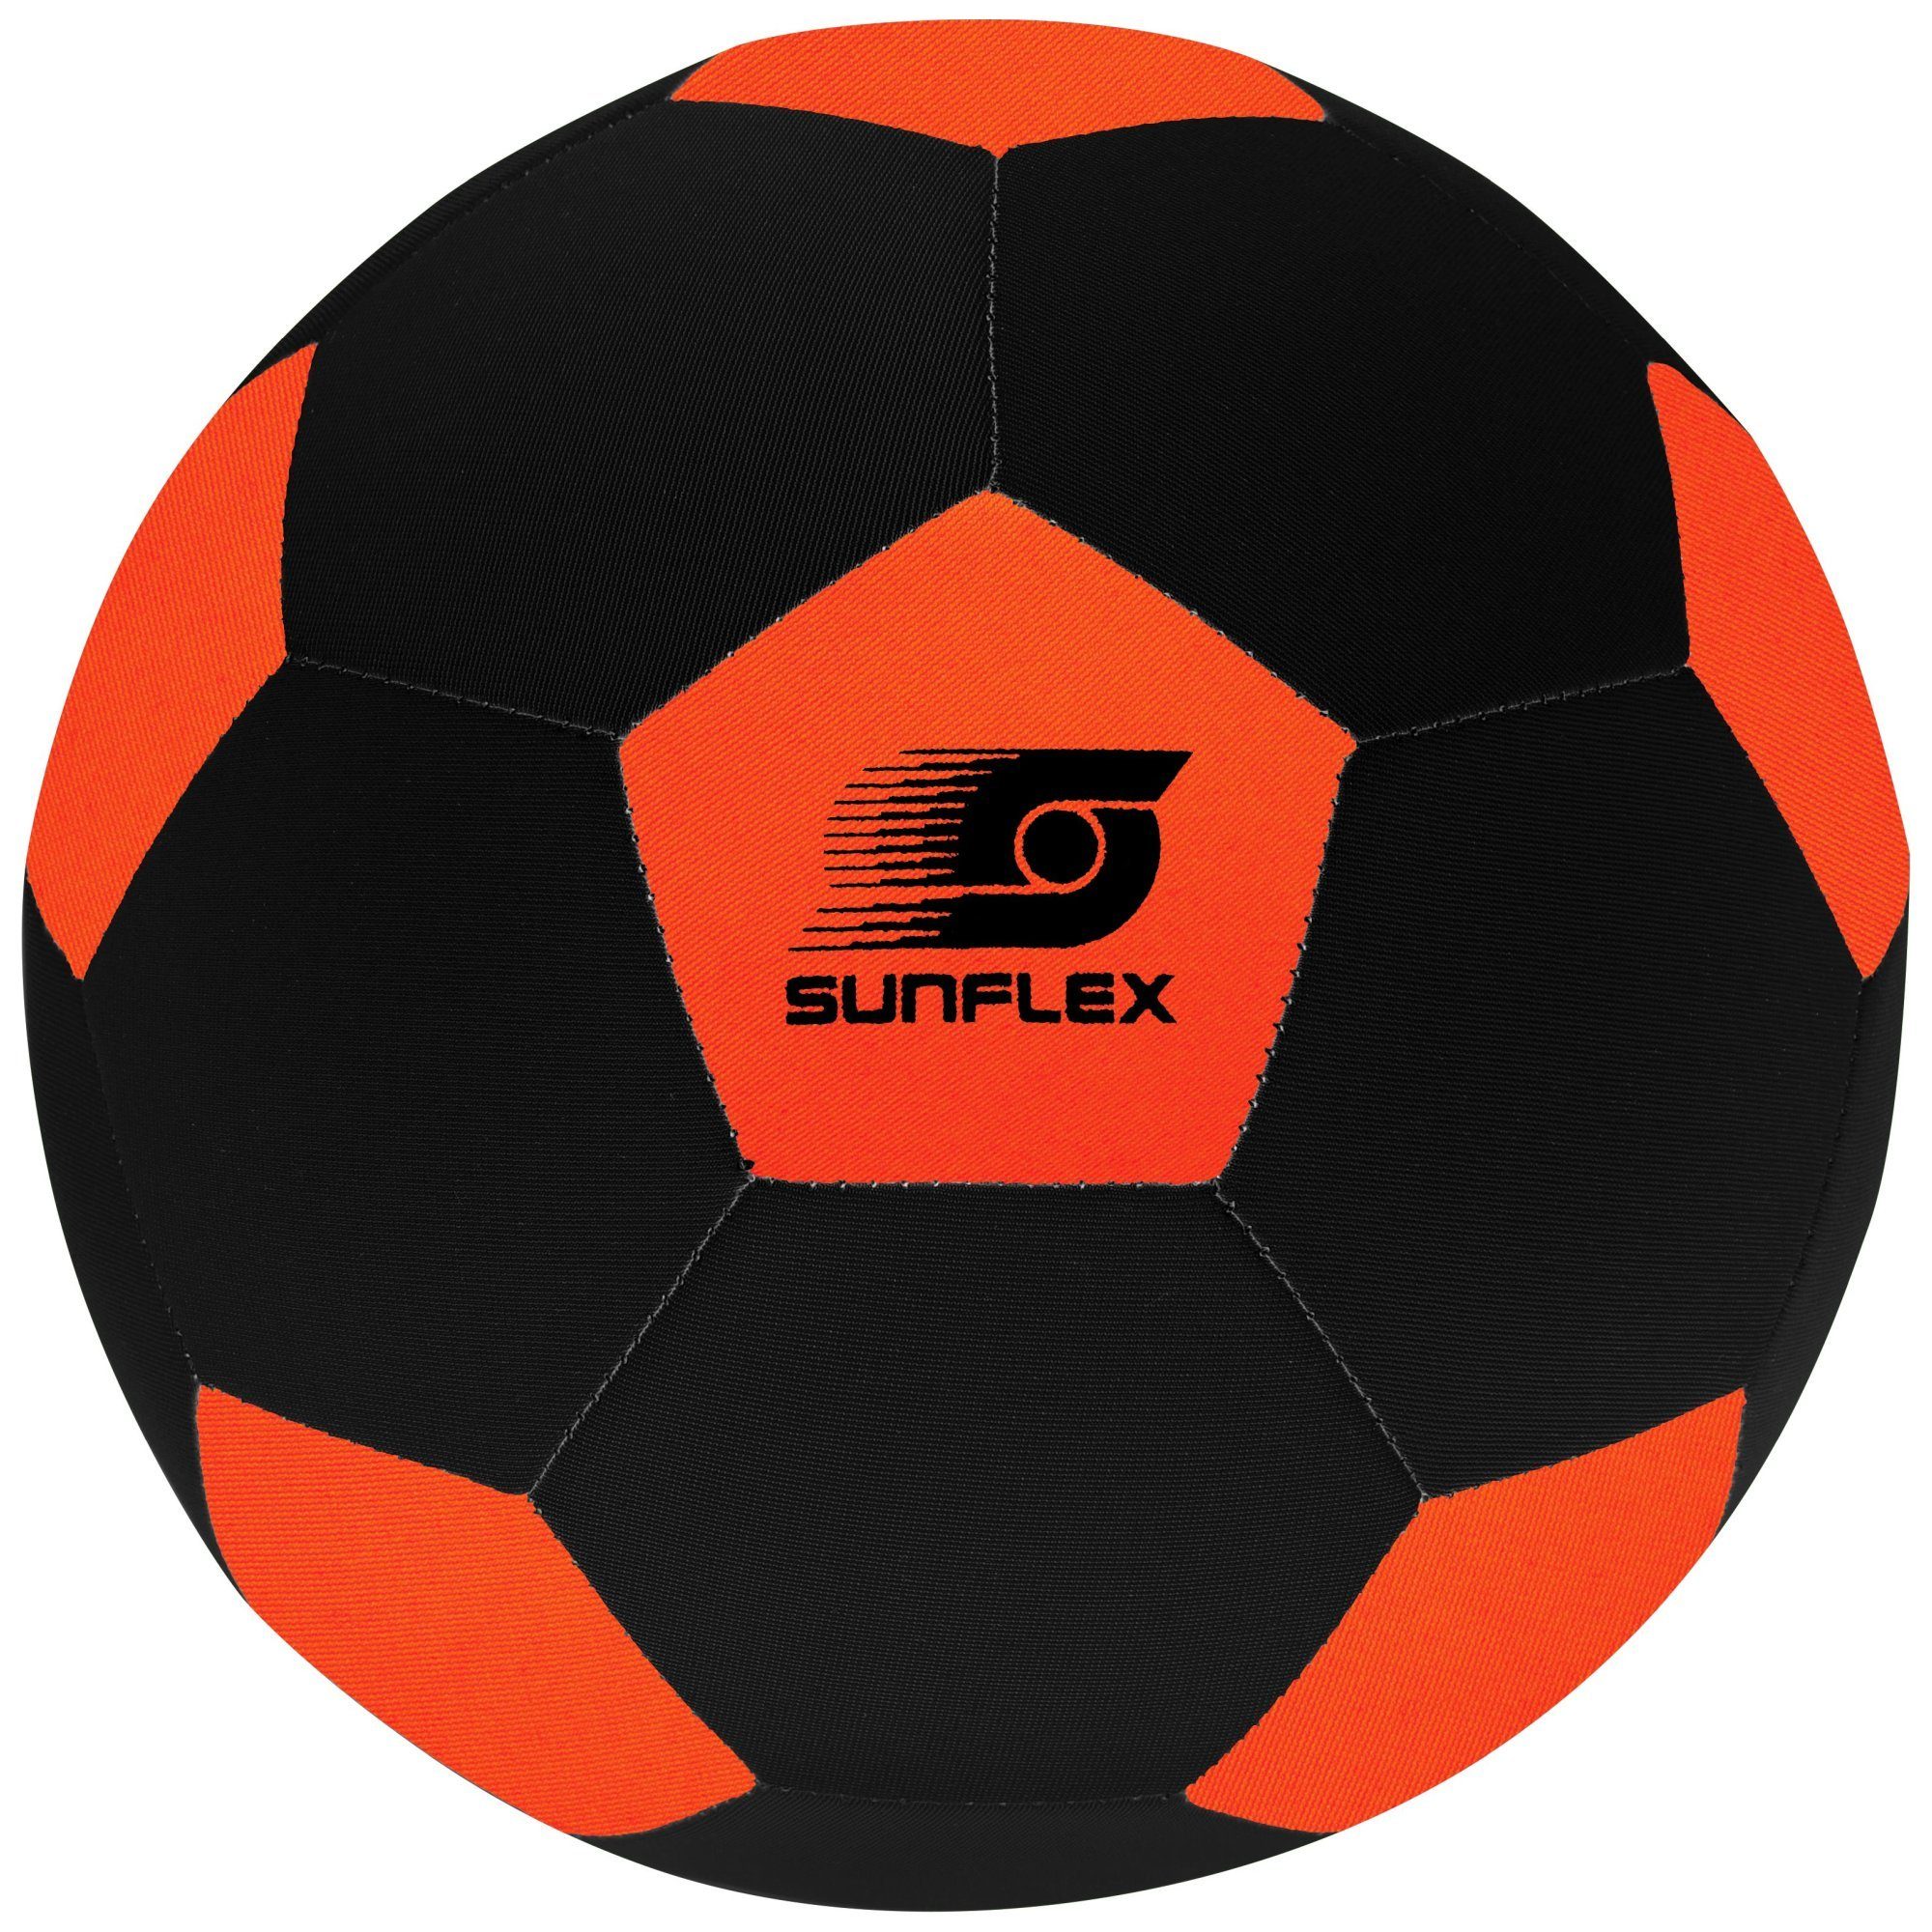 Sunflex Fußball sunflex Neopren Fußball Size 3 orange